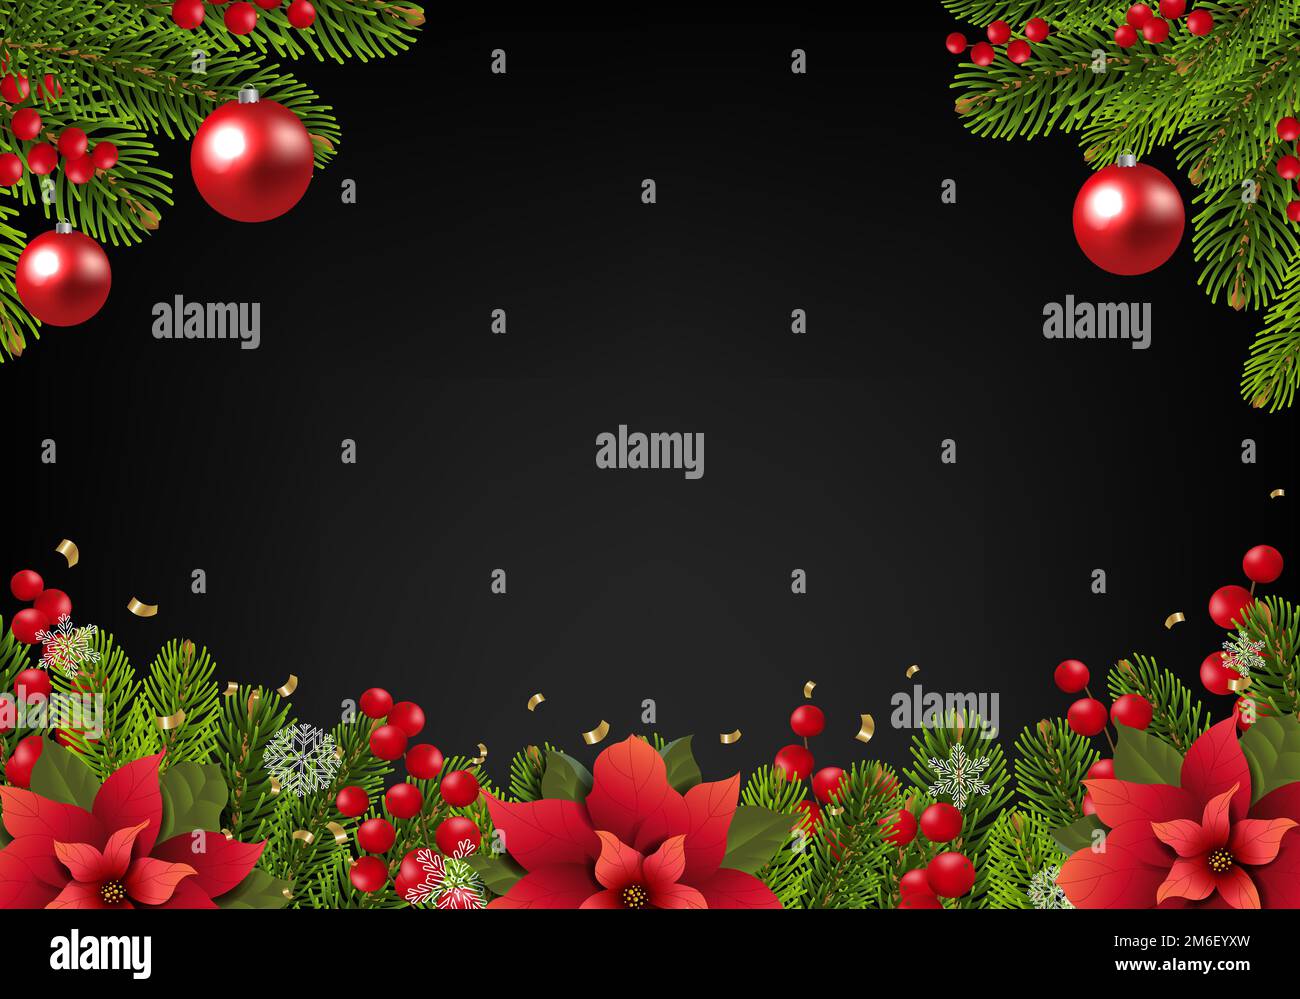 Carte postale de Noël avec bordure Poinsettia Banque D'Images